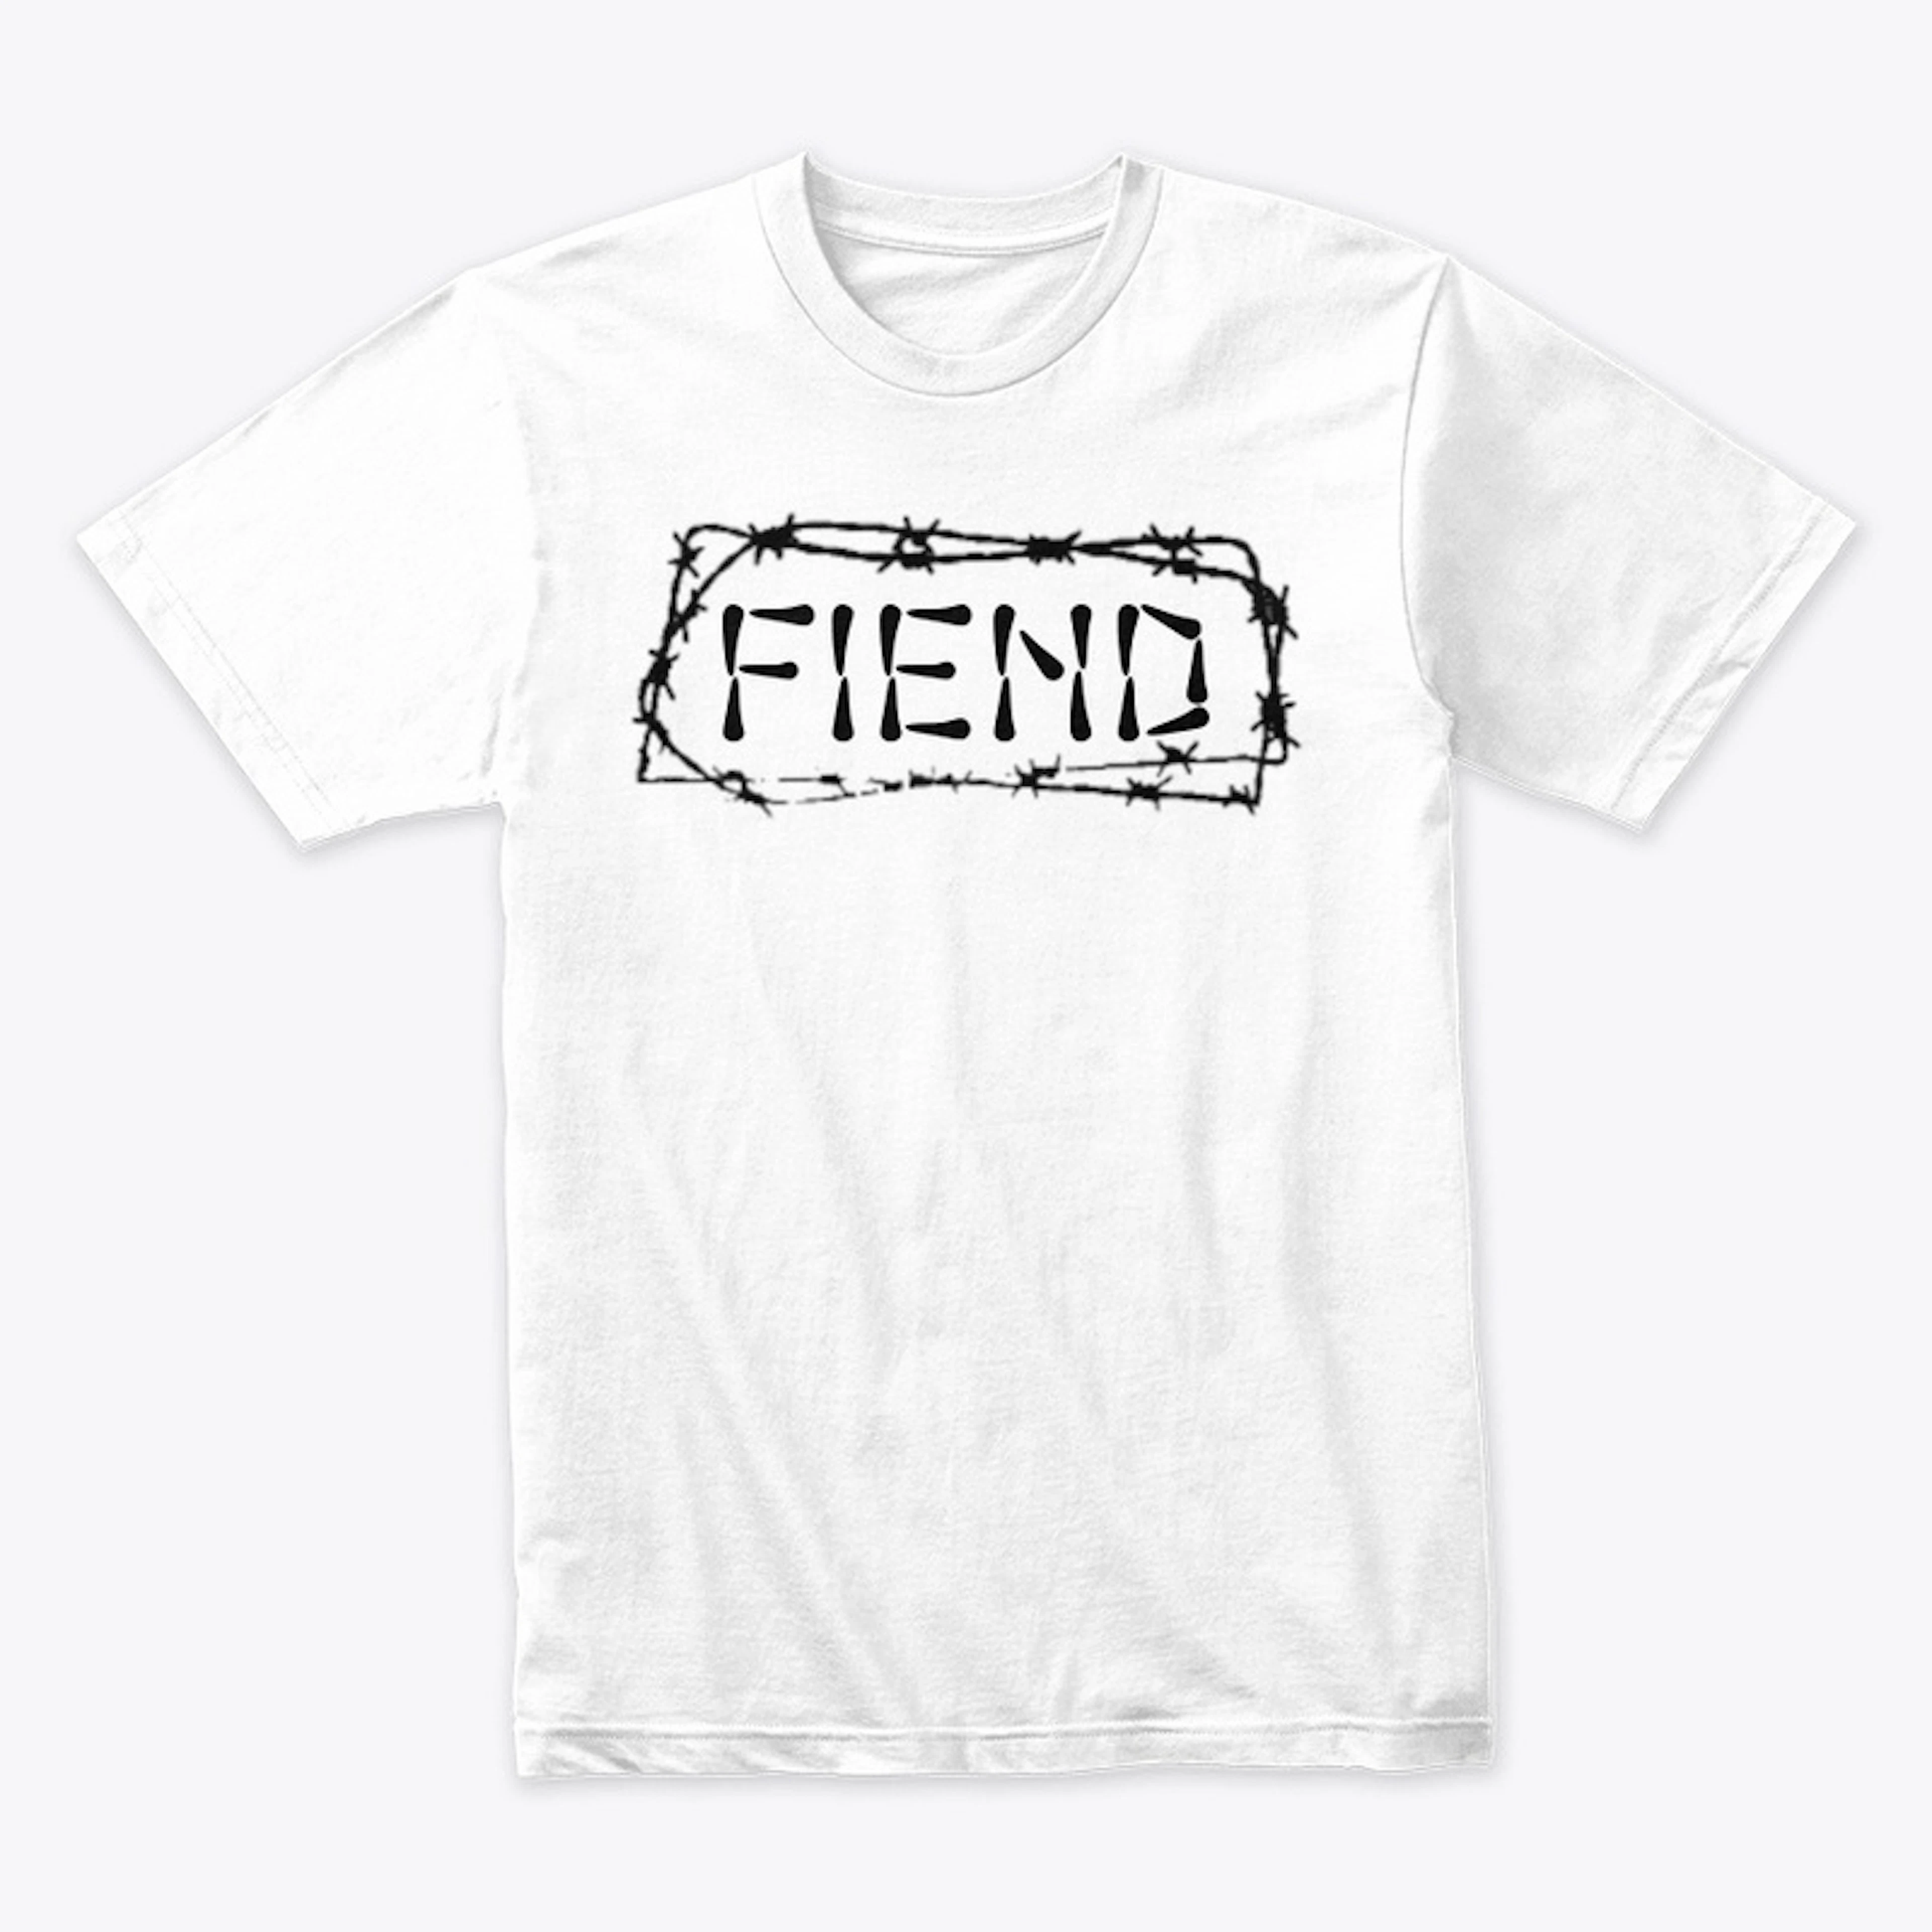 "FIEND" Design.